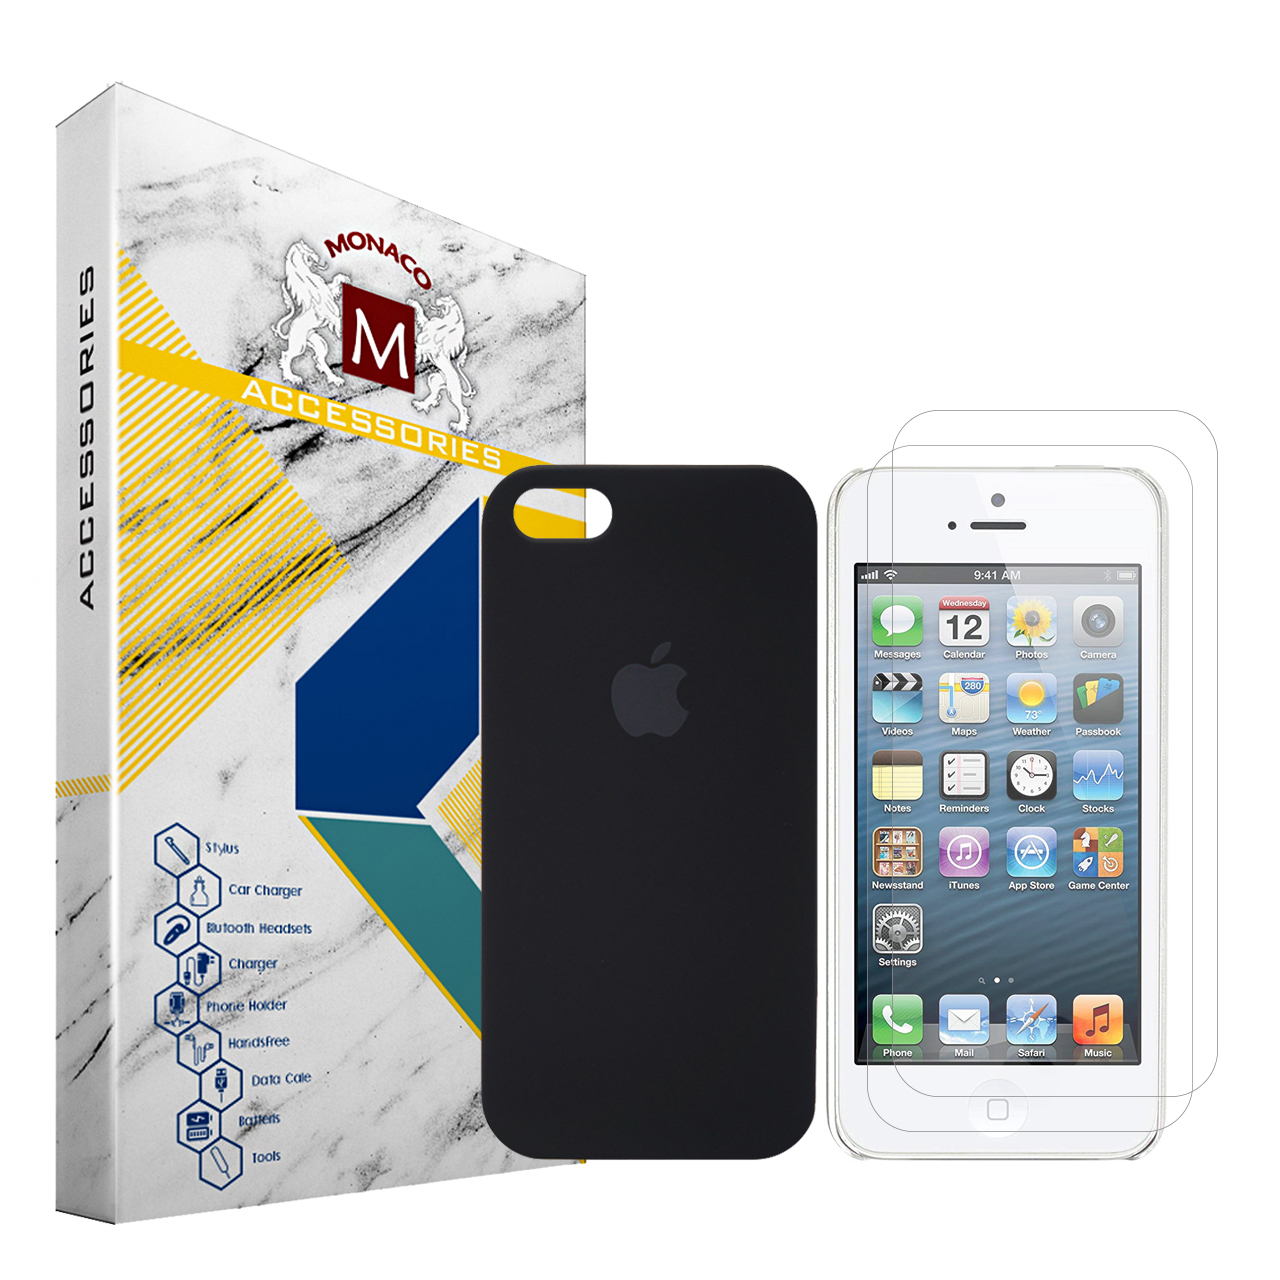 کاور موناکو مدل Si312 مناسب برای گوشی موبایل اپل iPhone 5 / 5S / SE به همراه 2 عدد محافظ صفحه نمایش